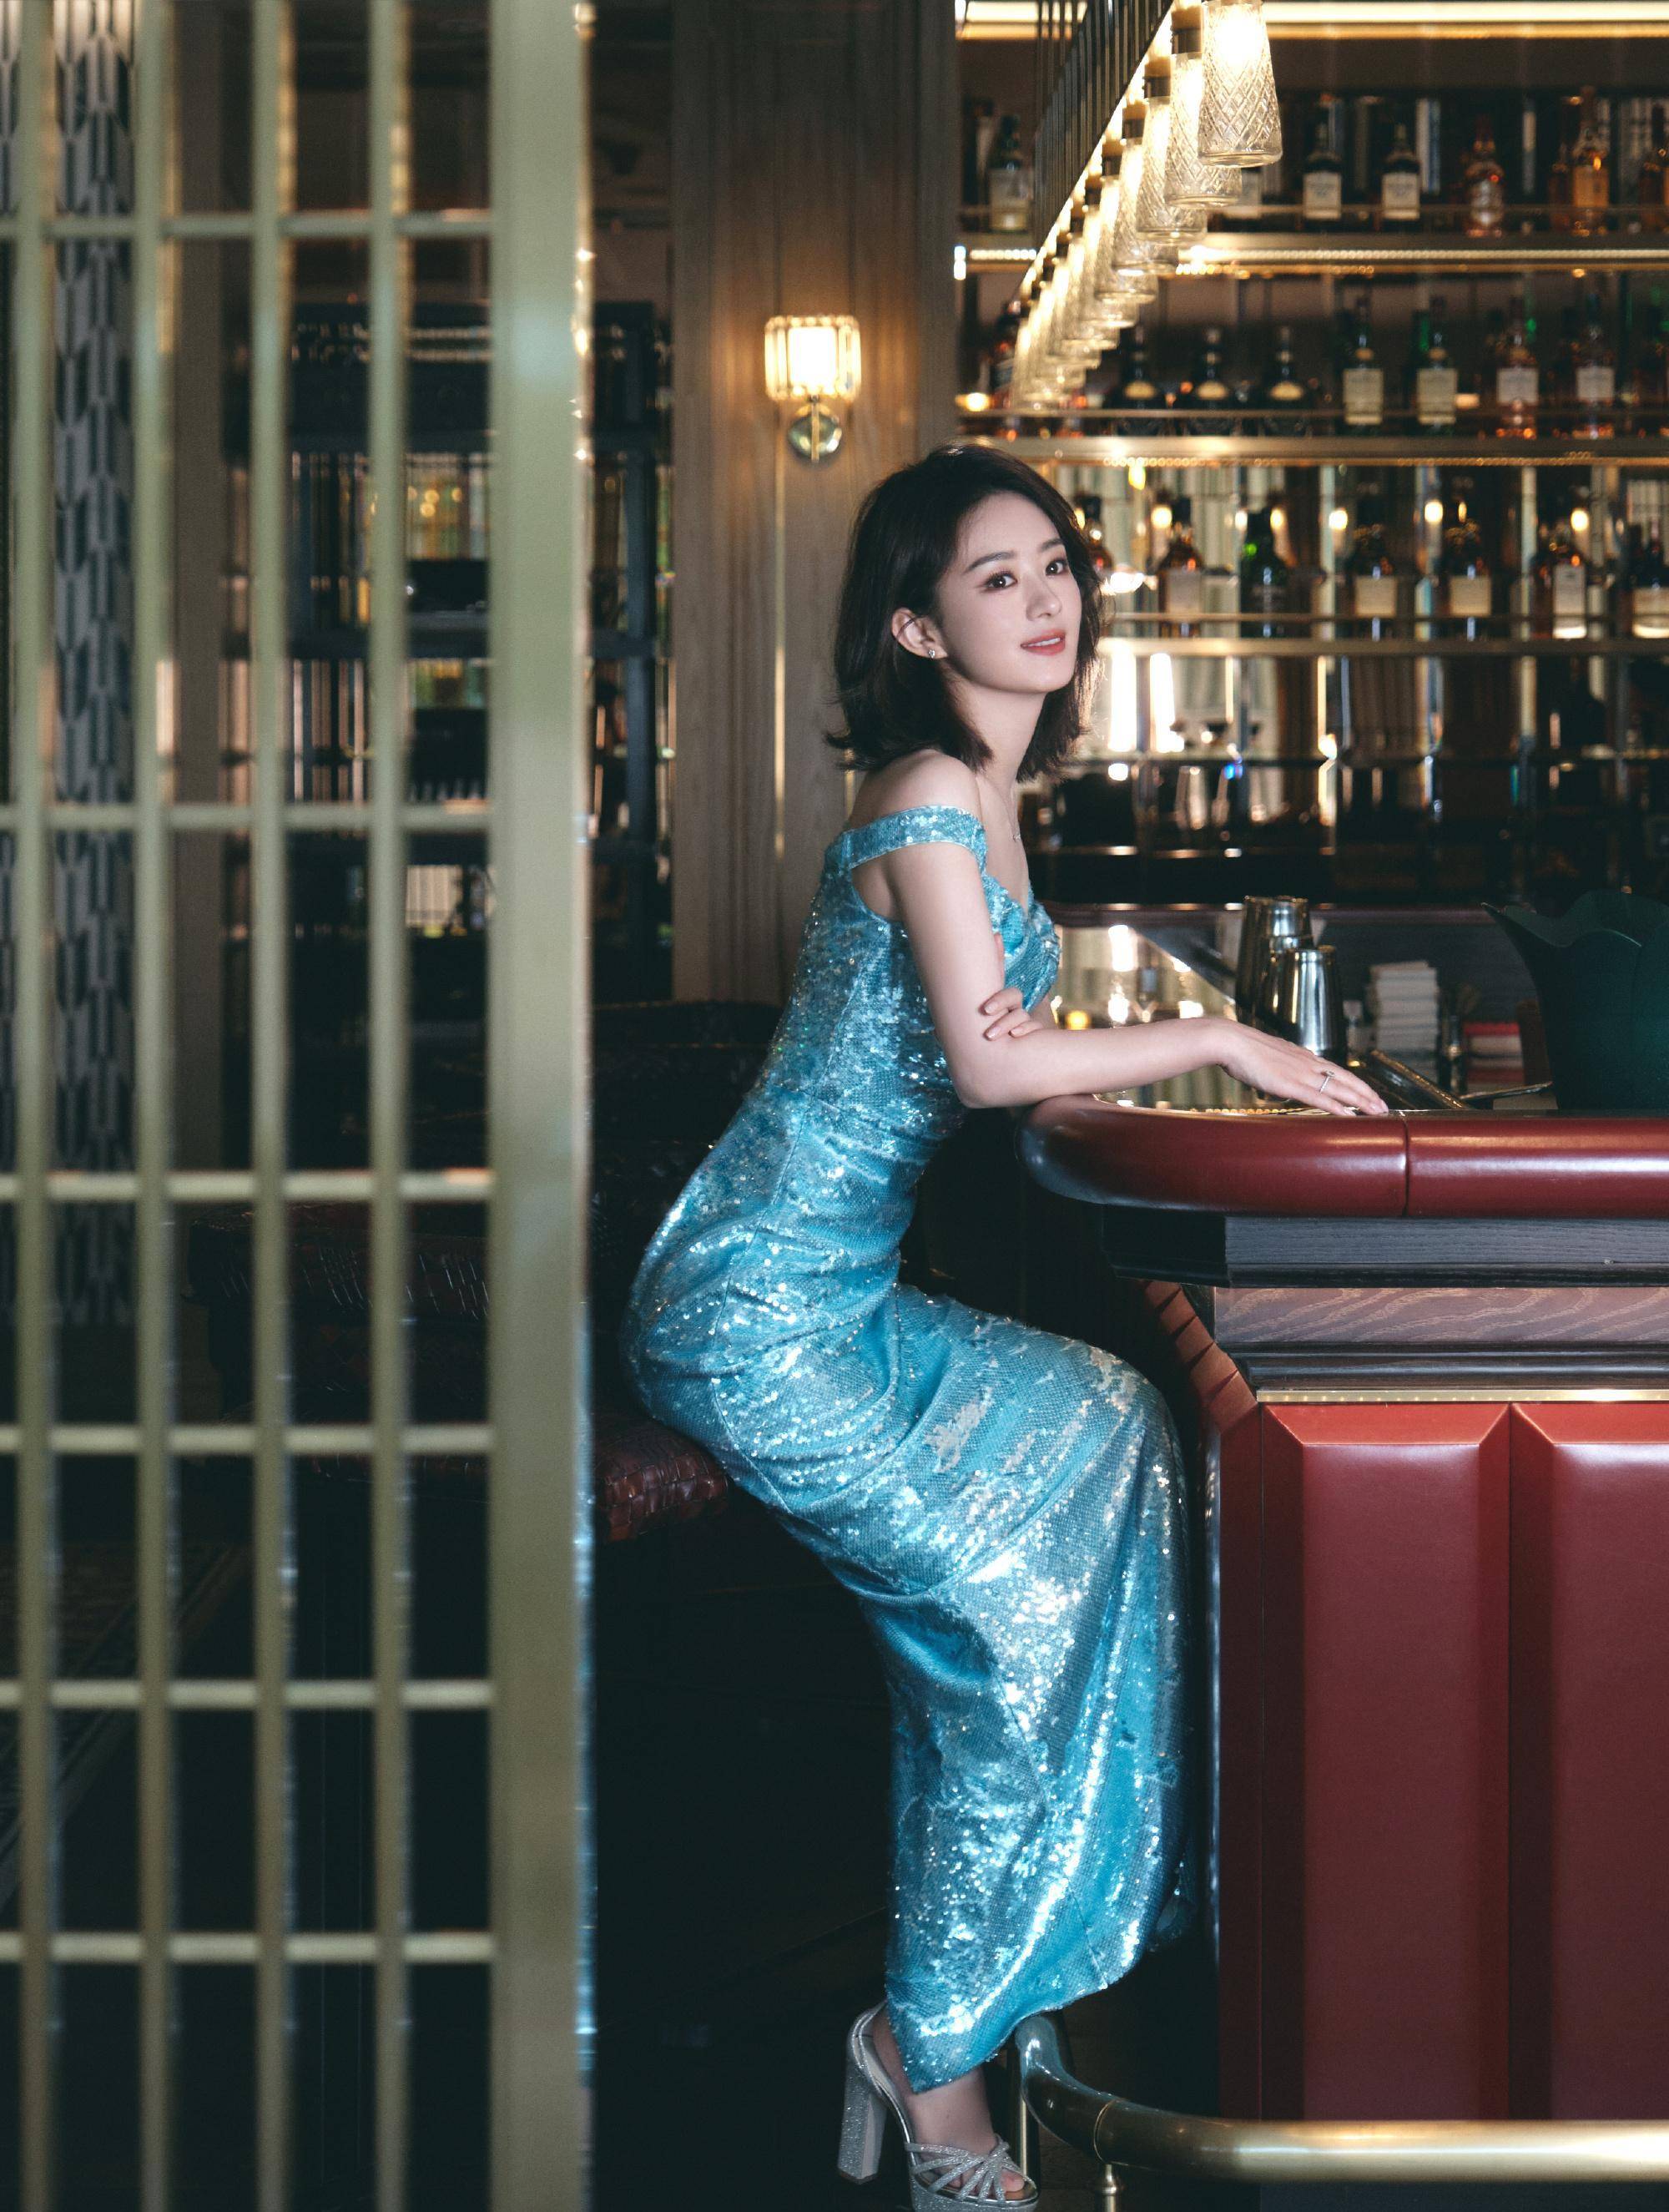 赵丽颖人鱼公主造型写真,身穿湖蓝色亮片长裙,波浪飘逸优雅